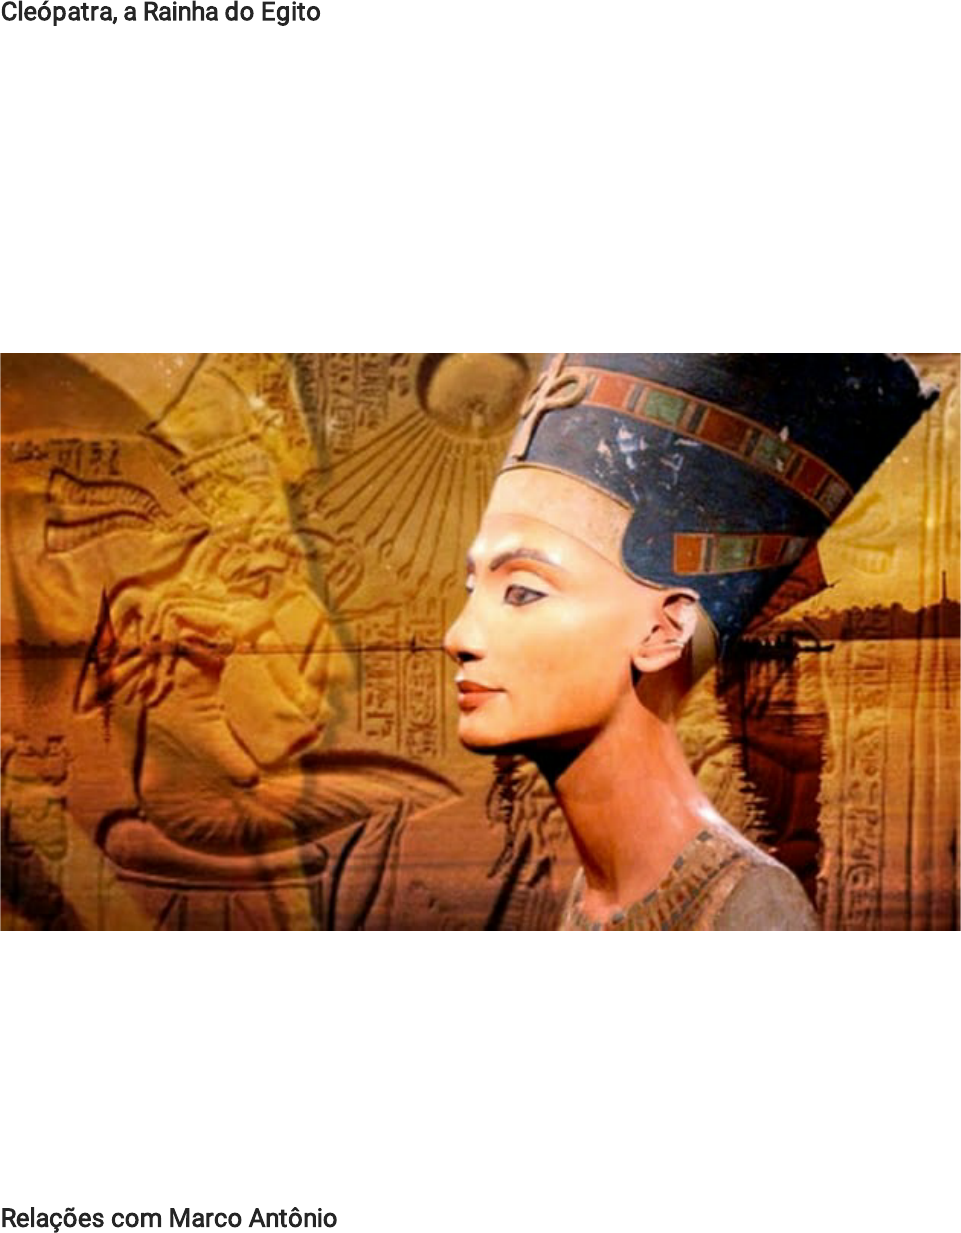 Cleópatra, quem foi? História de vida e inteligência da rainha do